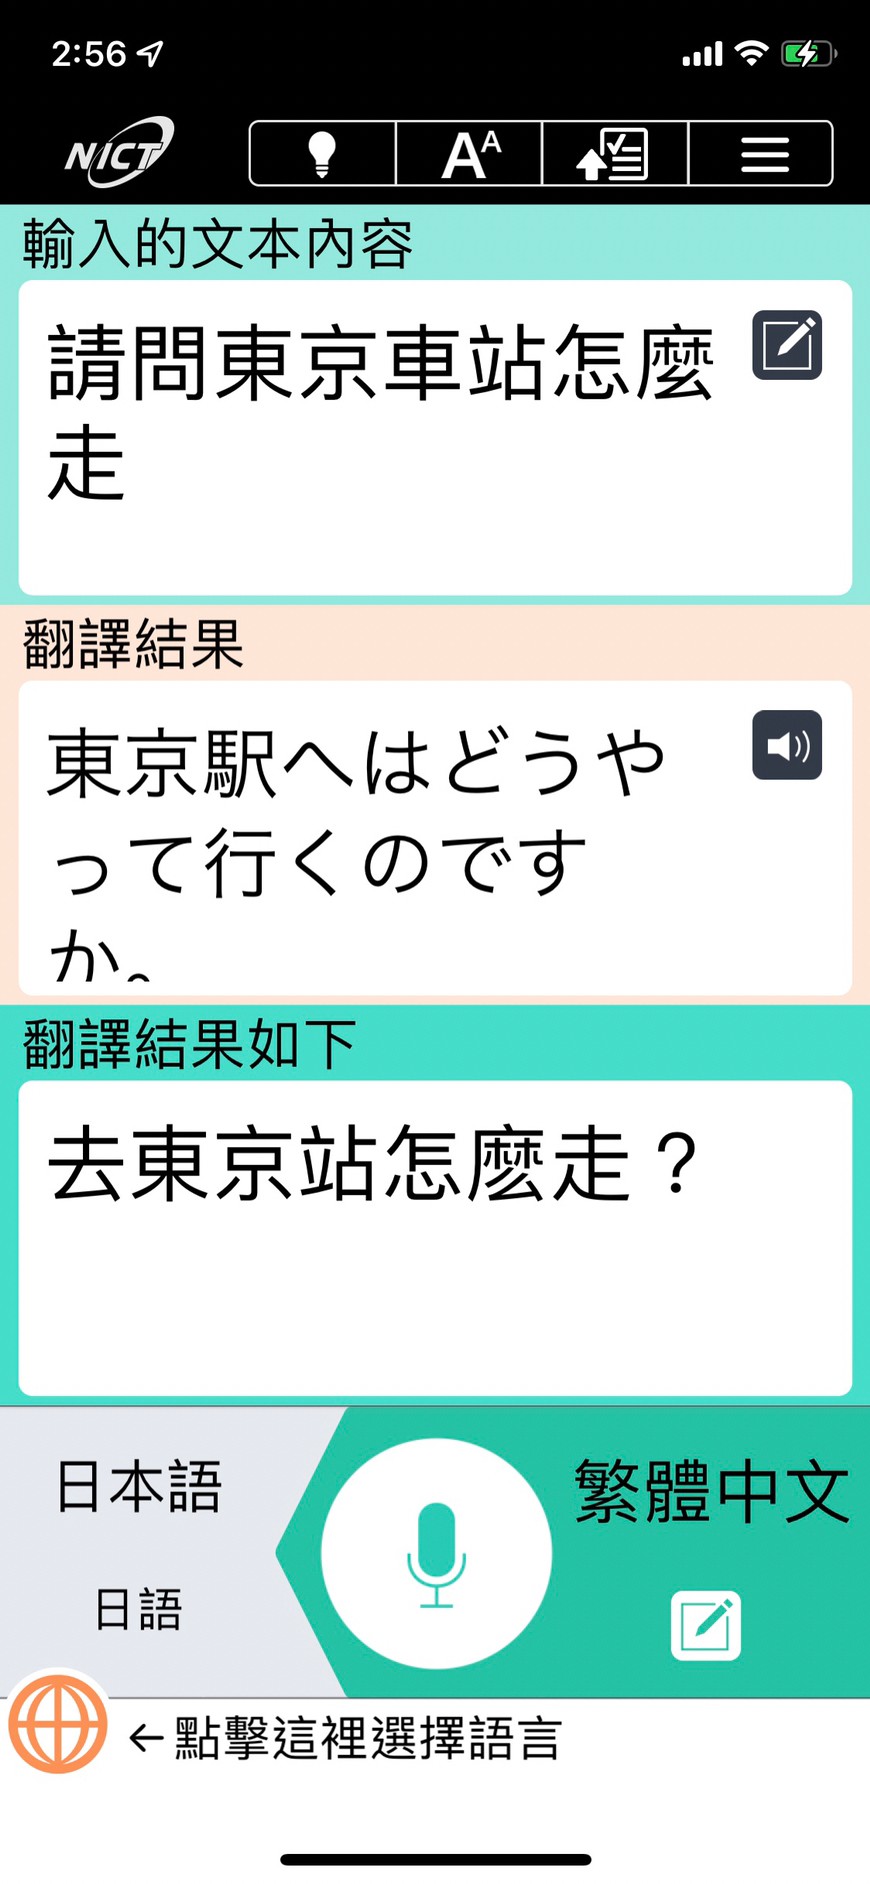 翻譯APP推薦：到日本玩一定要下載語音翻譯「VioceTra」，說中文後直接翻譯，超方便實用